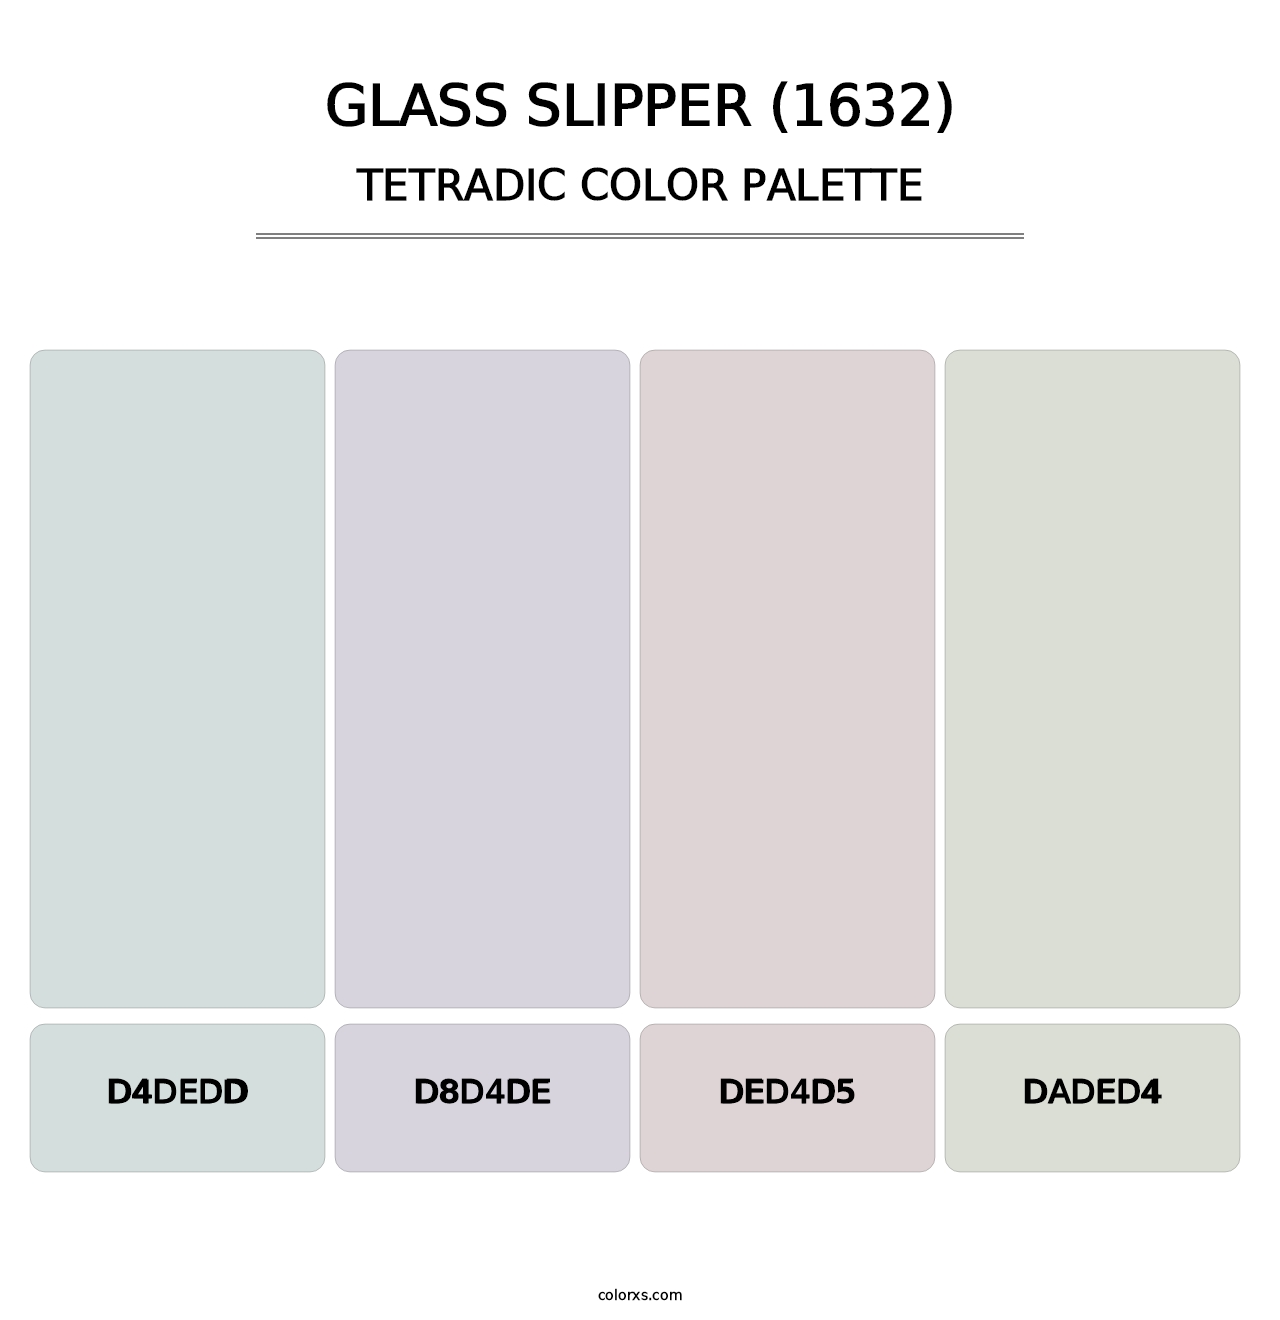 Glass Slipper (1632) - Tetradic Color Palette